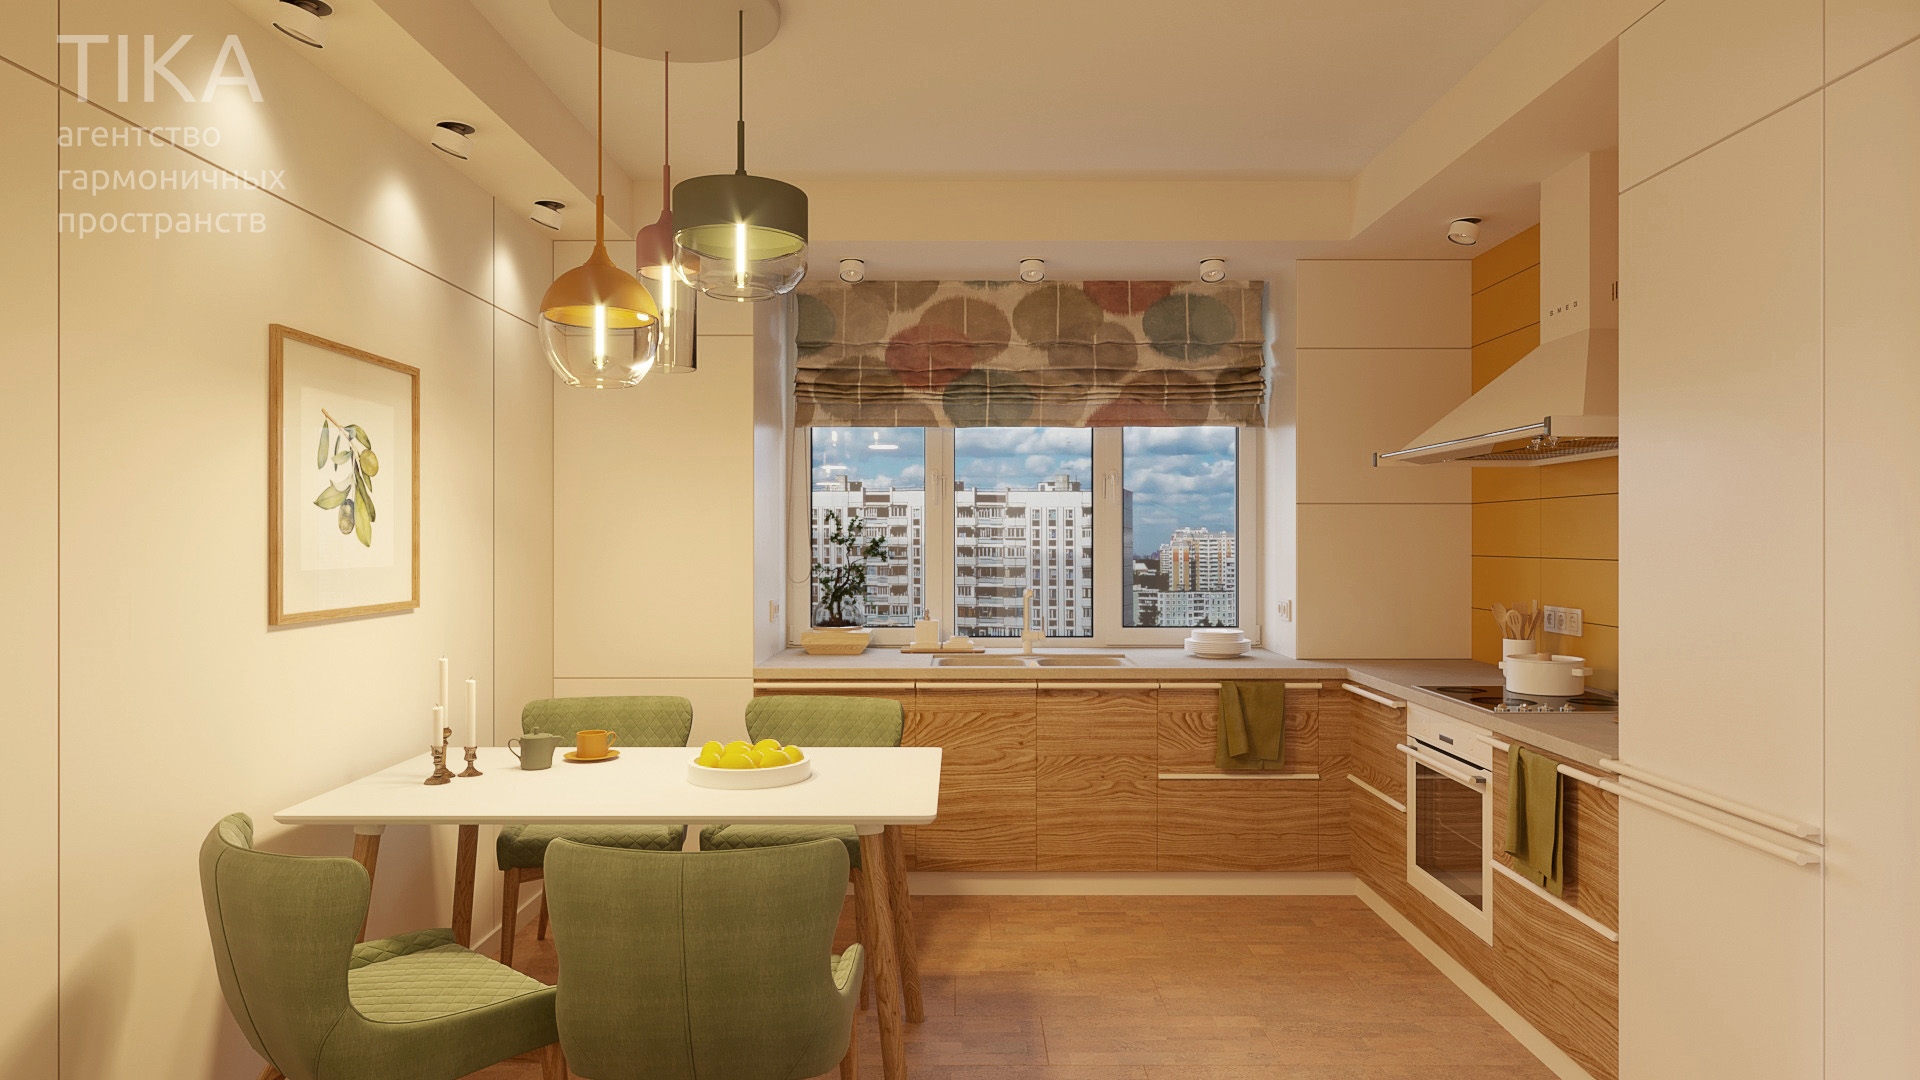 Изображение для проекта Дизайн интерьера квартиры в Москве 2132